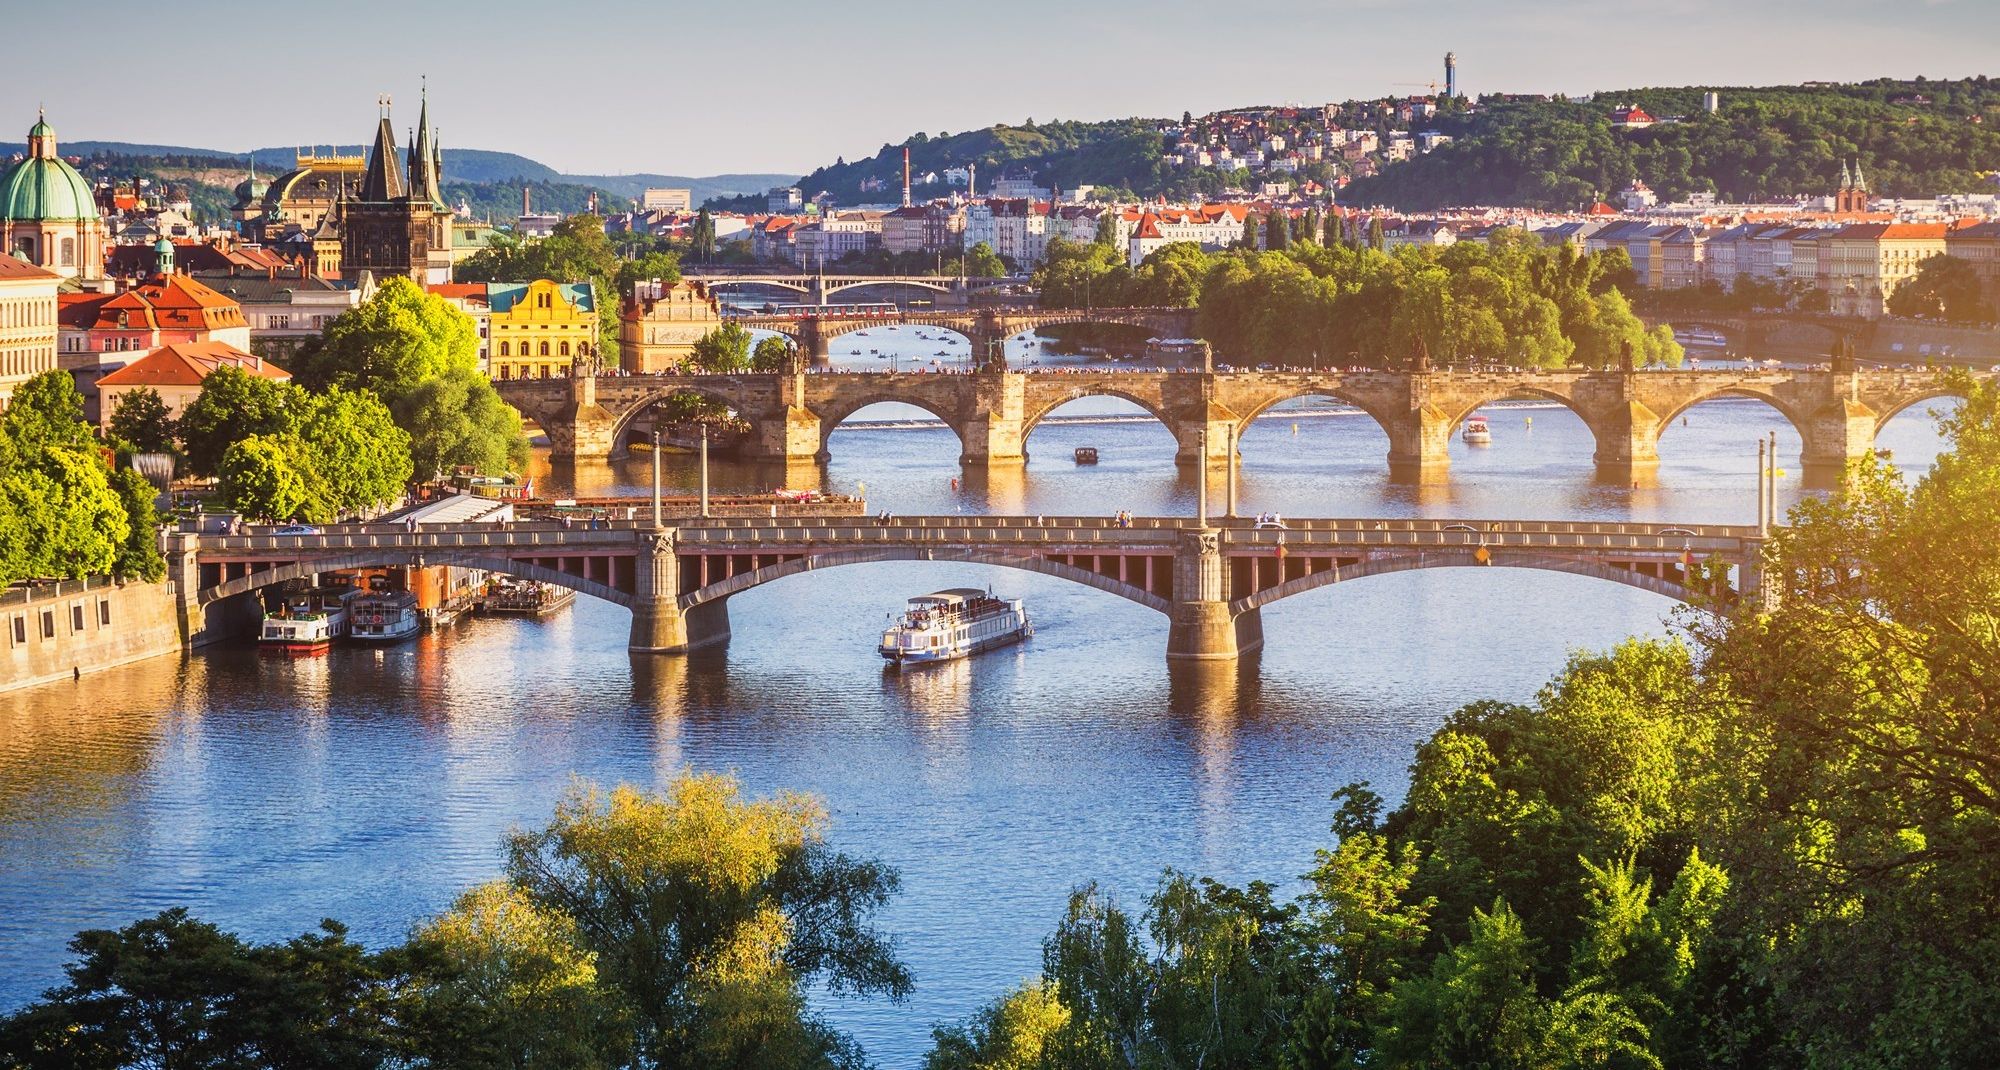 River Vltava flowing through Prague in Czech Republic